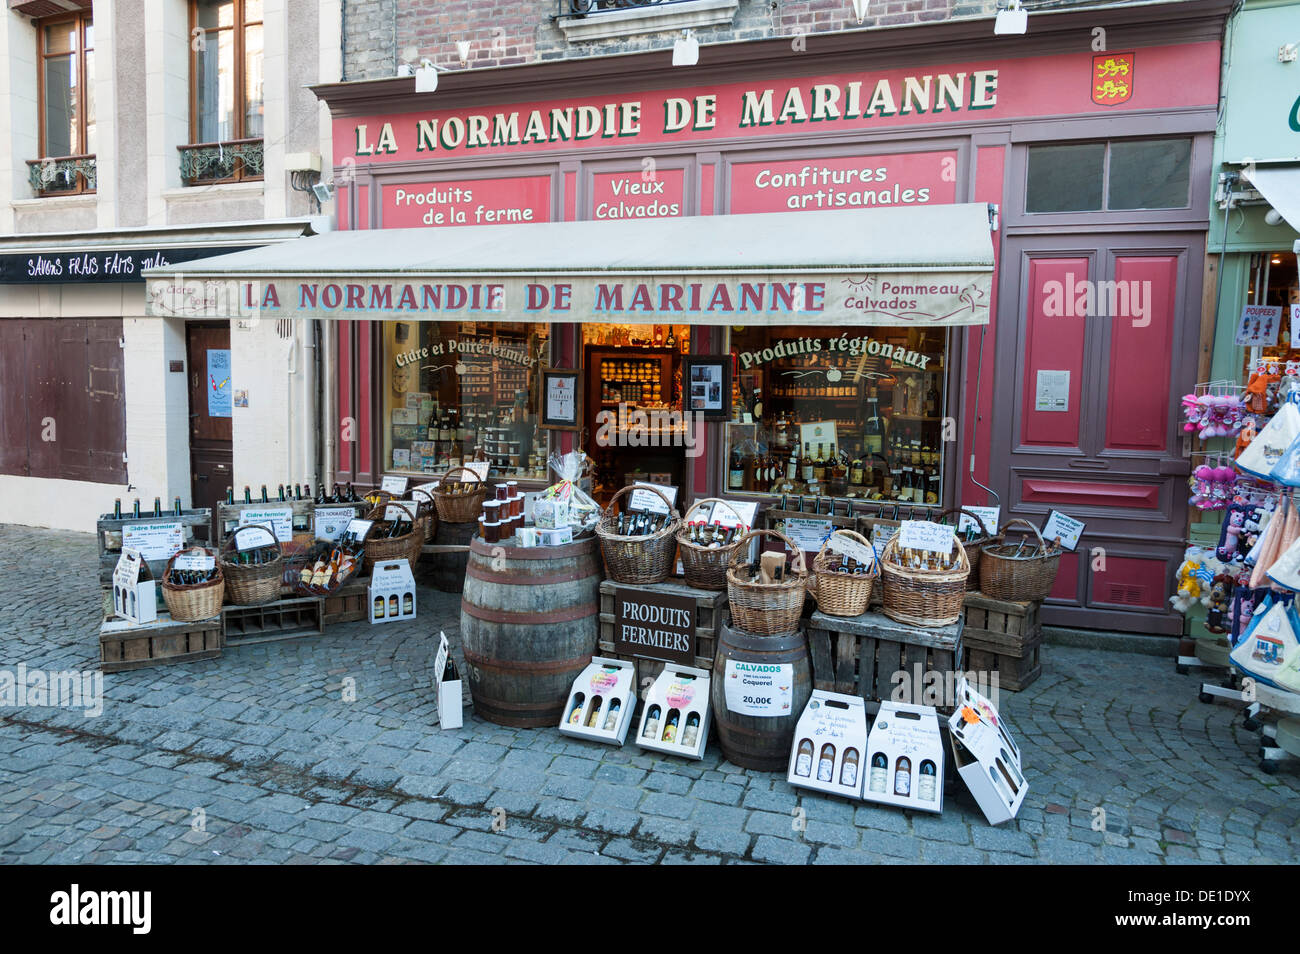 La Normandie de Marianne et de l'alimentation cadeaux Honfleur Normandie France la vente locale des produits français Banque D'Images